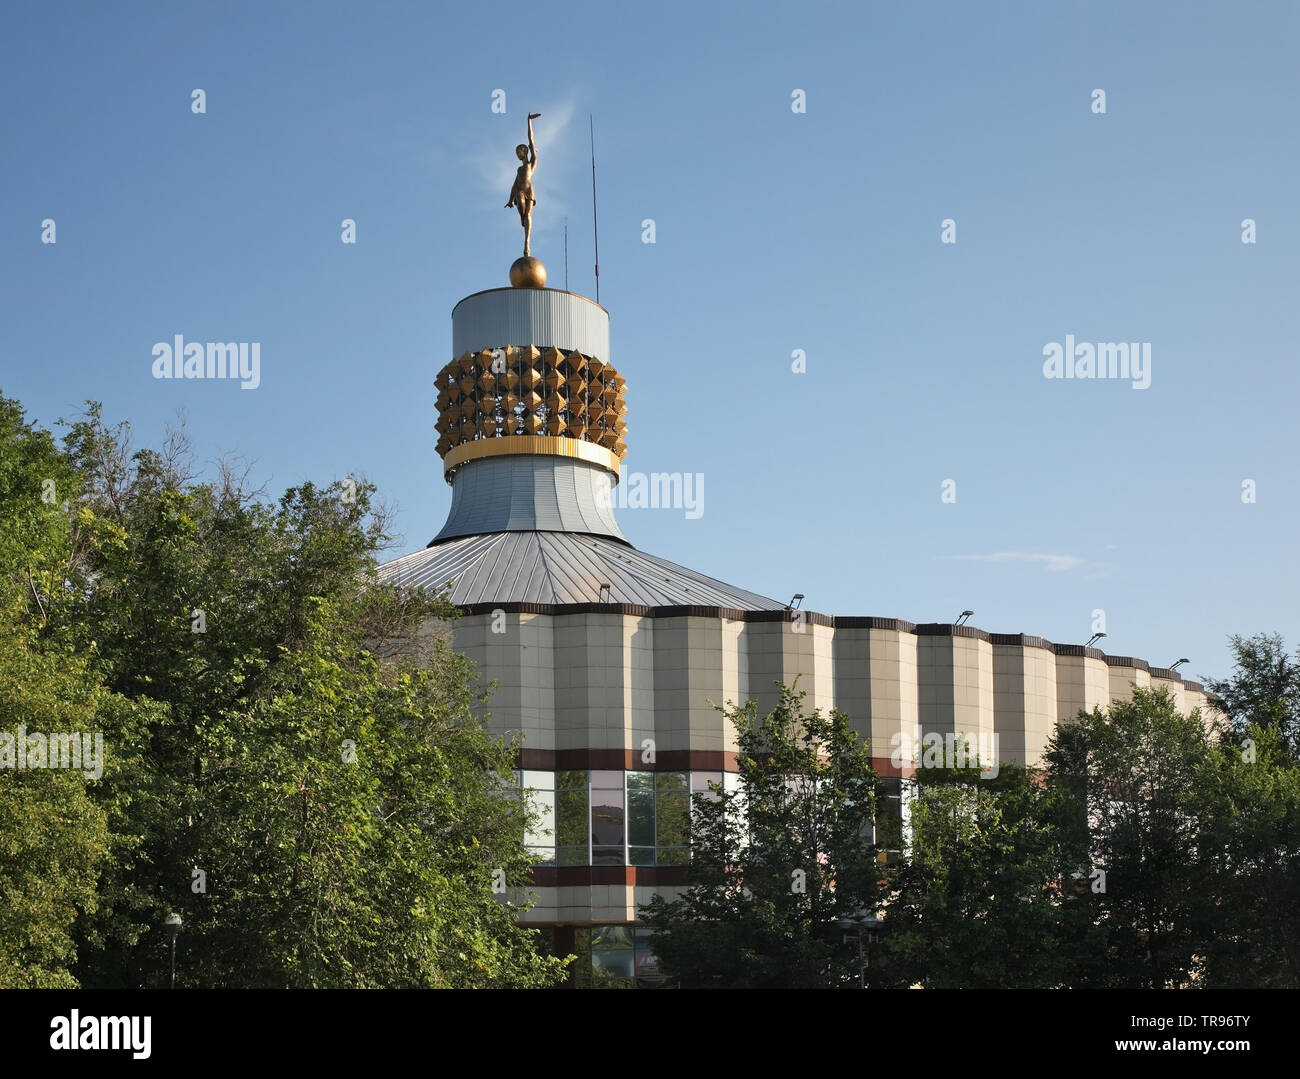 Circus building in Karaganda. Kazakhstan Stock Photo